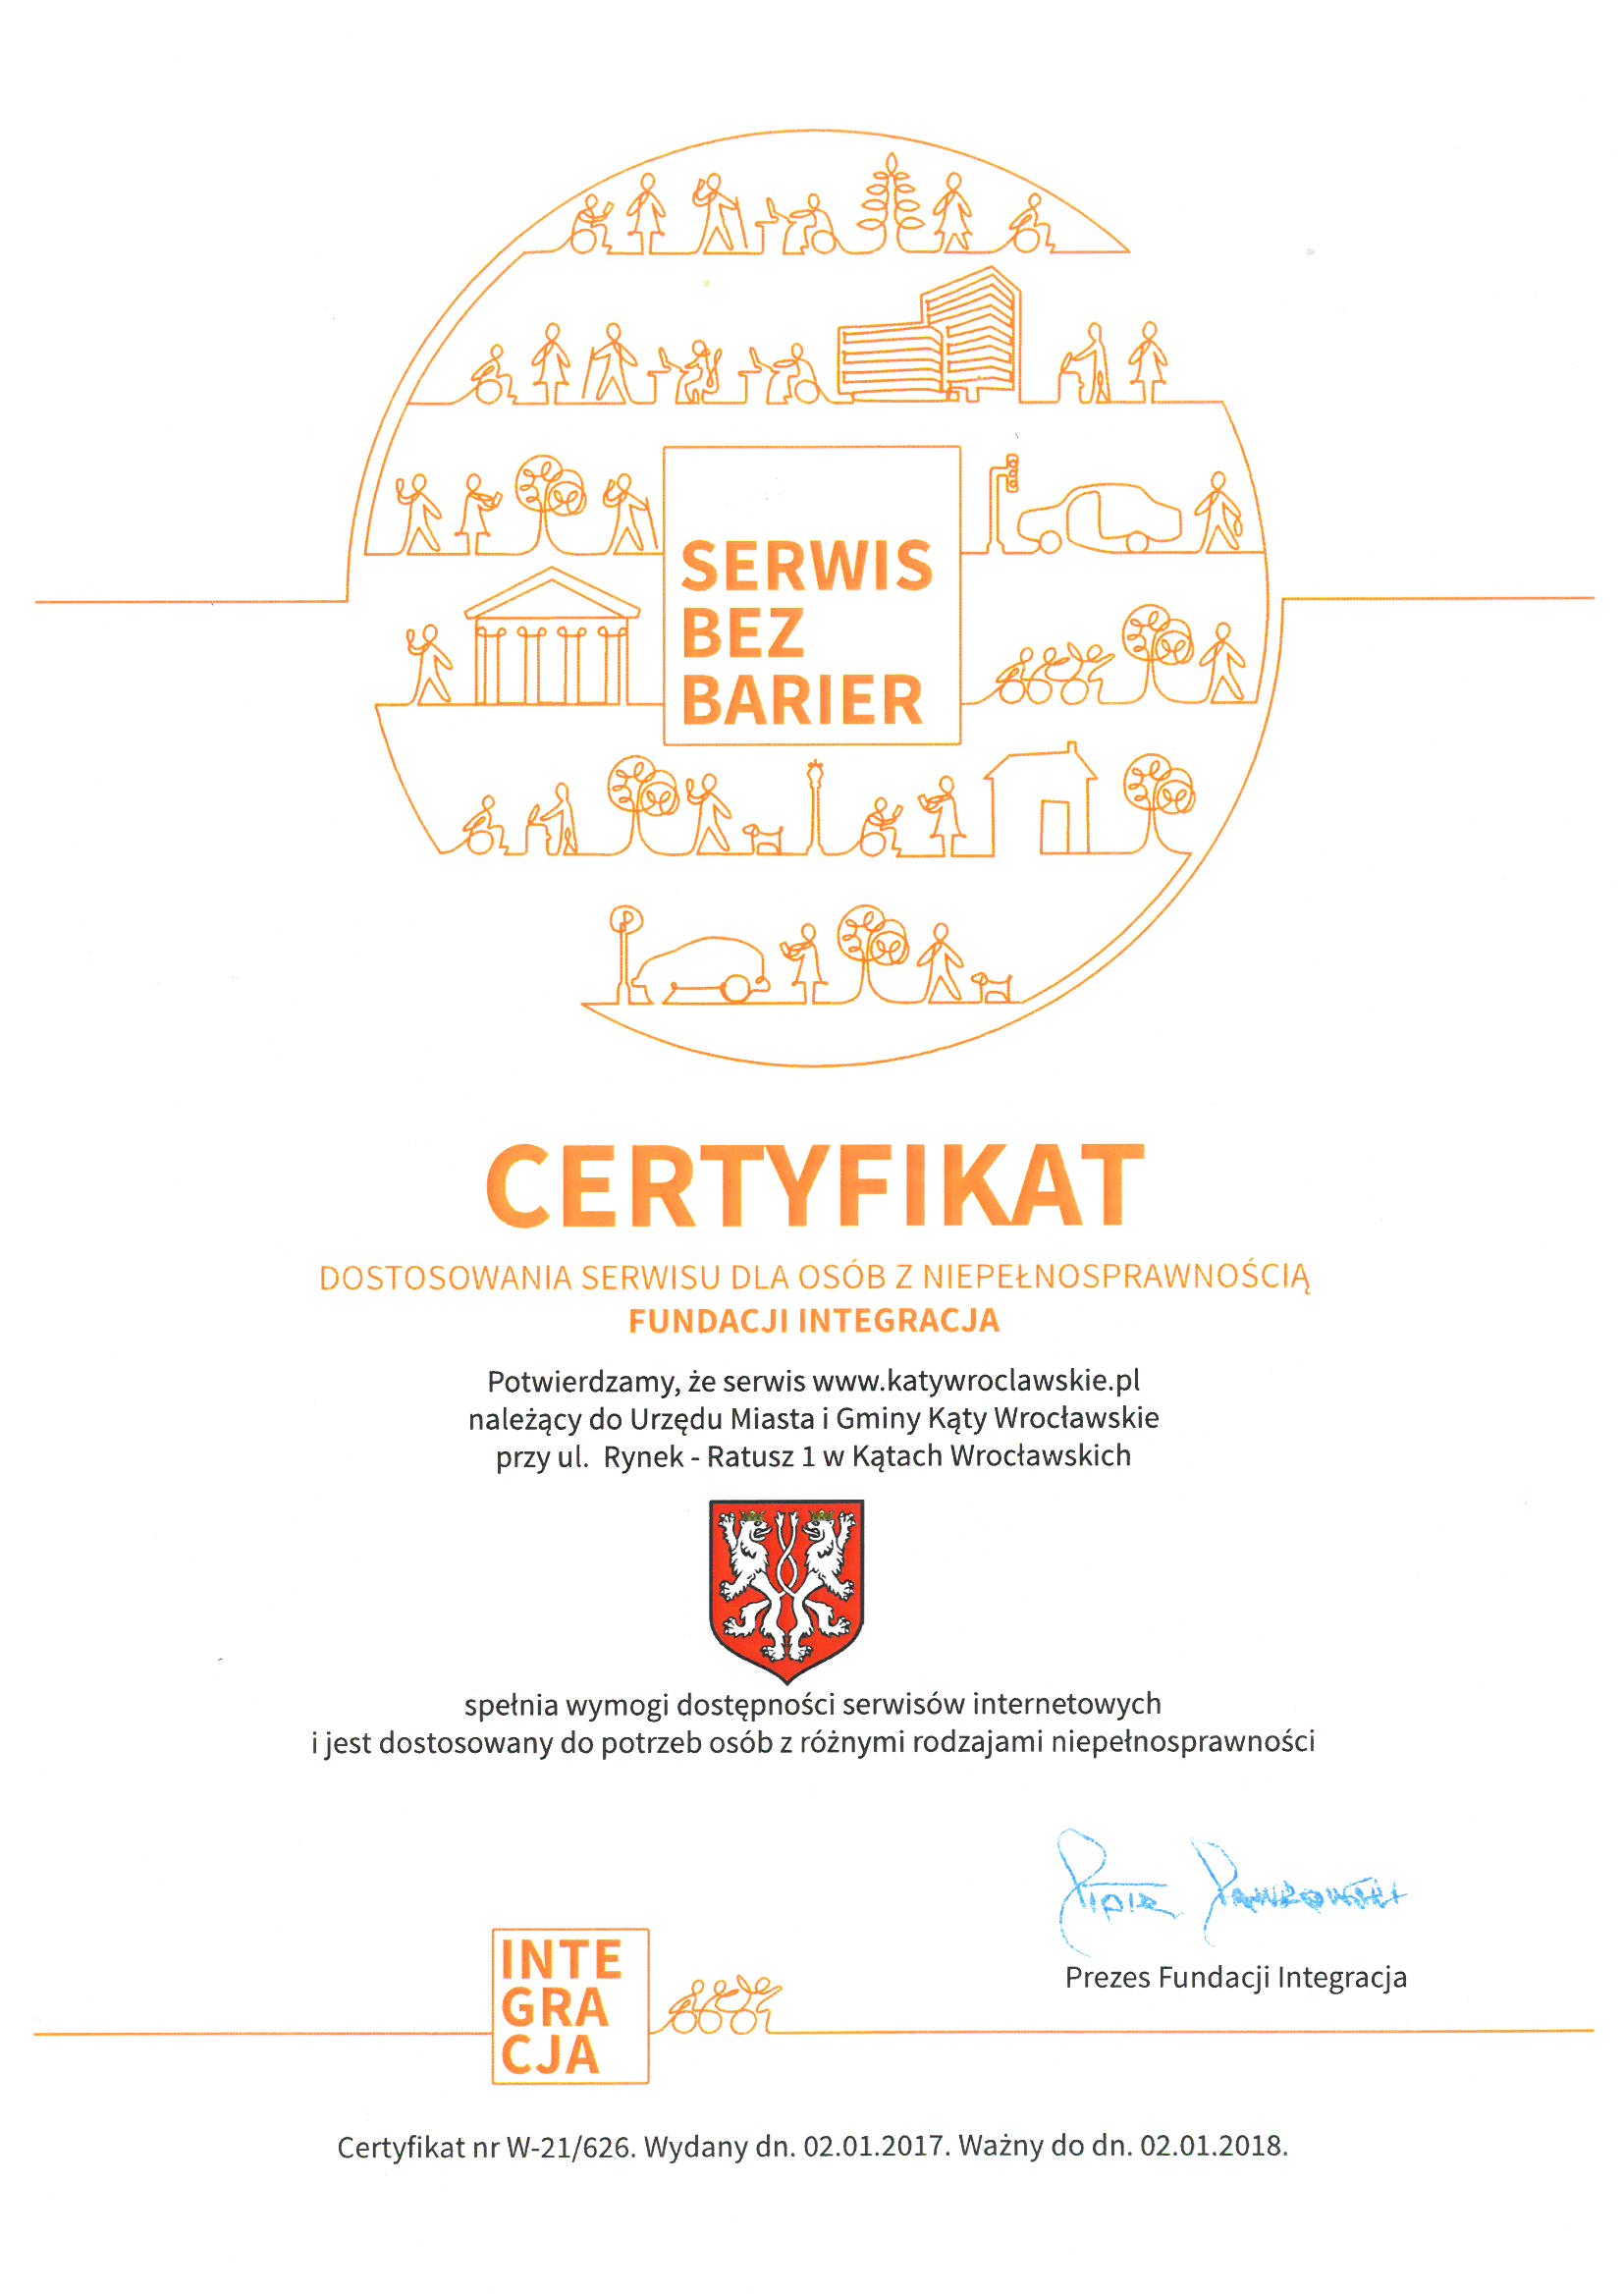 zdjęcie przedstawia certyfikat o dostępności serwisu www.katywroclawskie.pl dla osób niepełnosprawnych, wydany przez Fundację Integracja